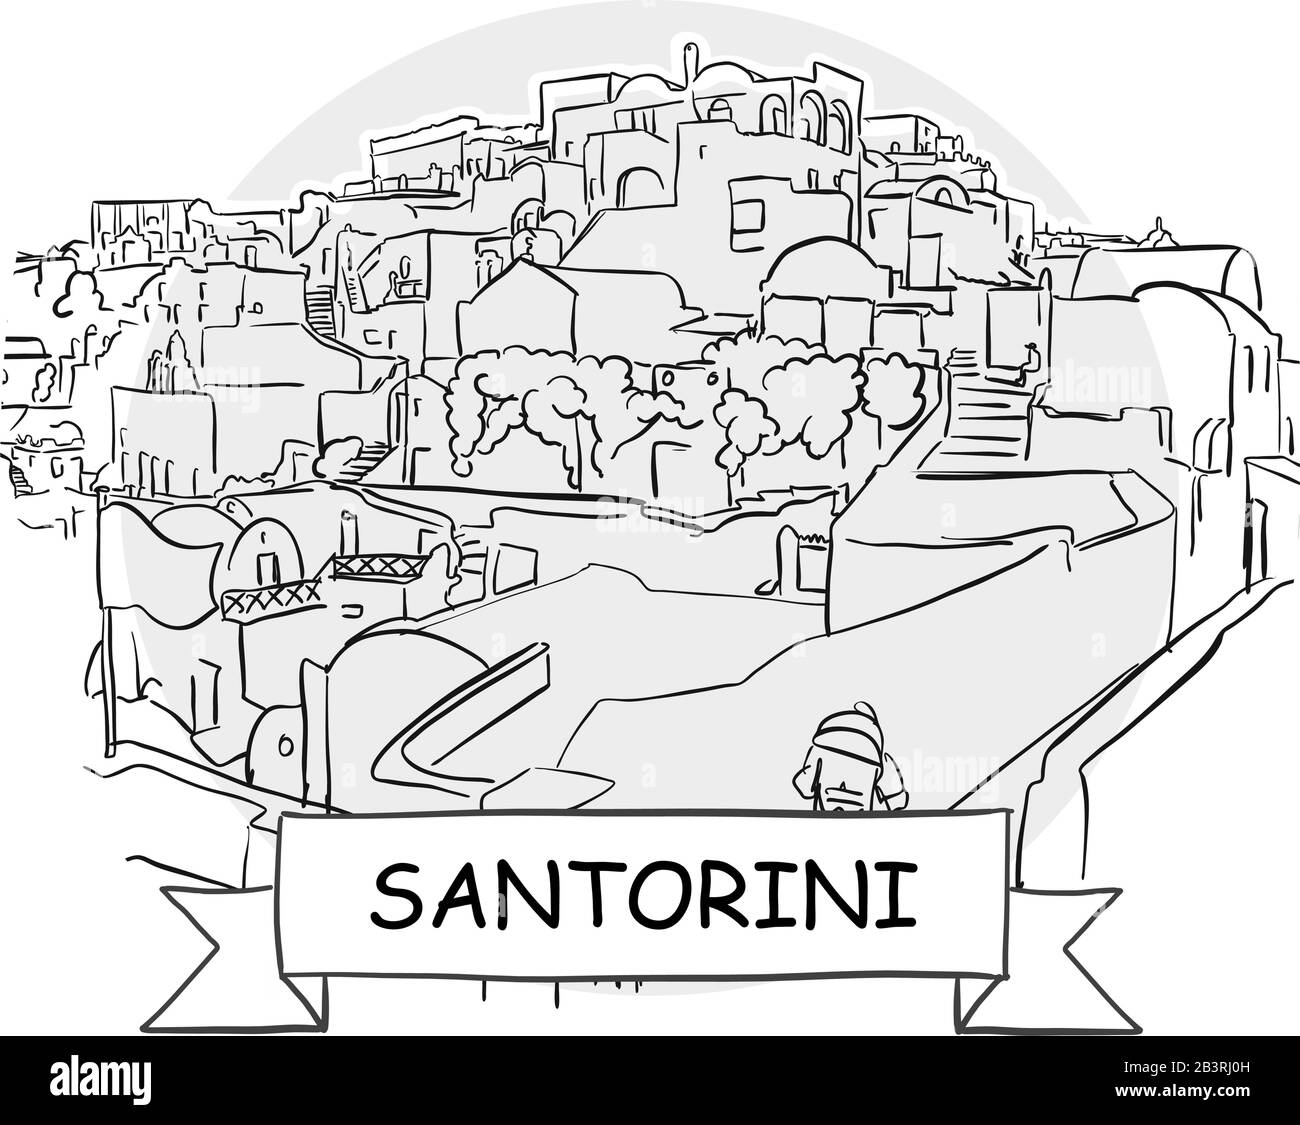 Signo De Vector Urbano Dibujado A Mano De Santorini. Ilustración De Línea Negra Con Cinta Y Título. Ilustración del Vector